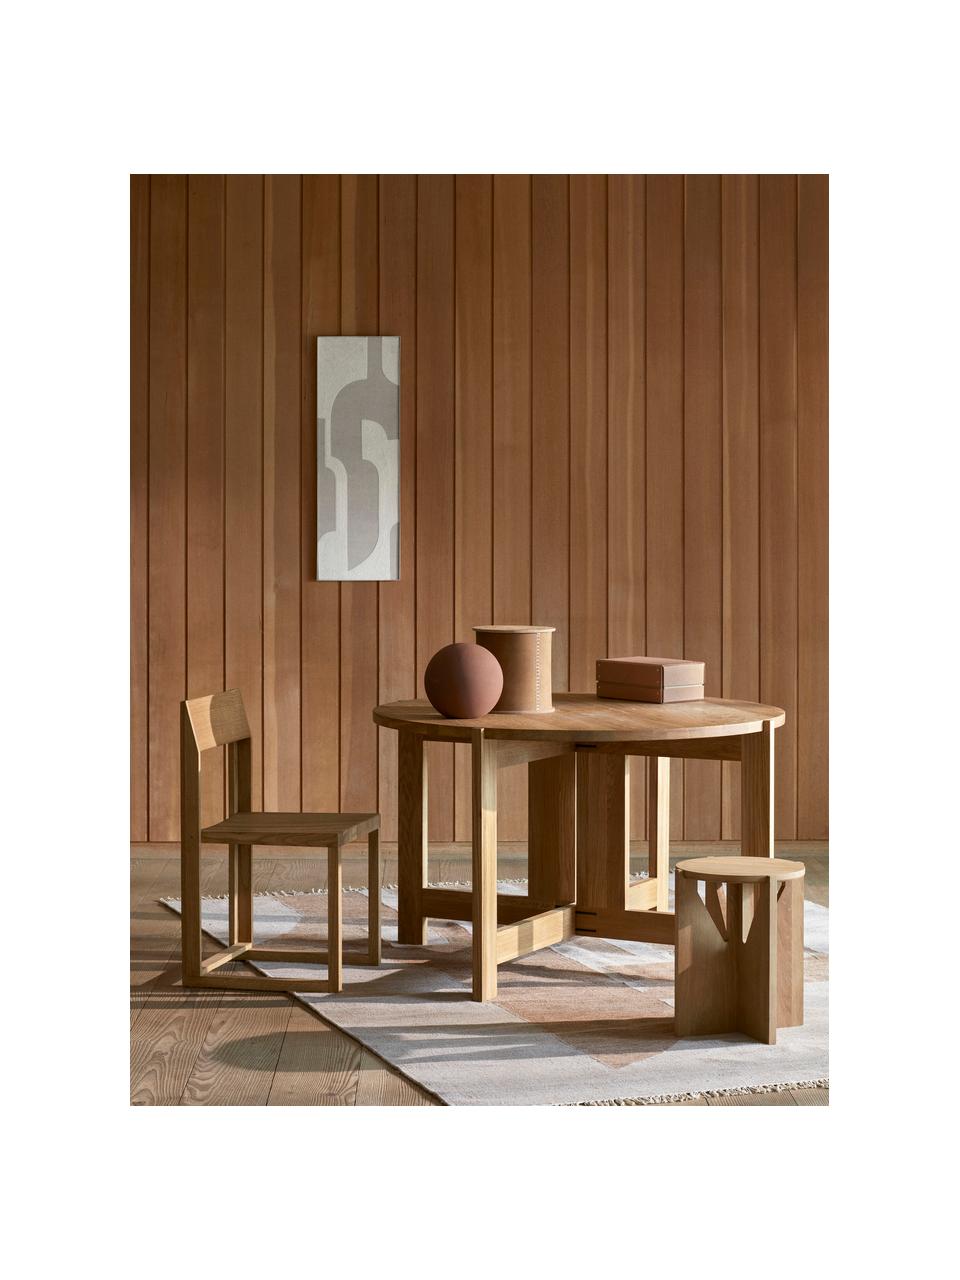 Dřevěná židle z dubového dřeva Outline, Olejované dubové dřevo

Tento produkt je vyroben z udržitelných zdrojů dřeva s certifikací FSC®., Dubové dřevo, Š 46 cm, H 46 cm